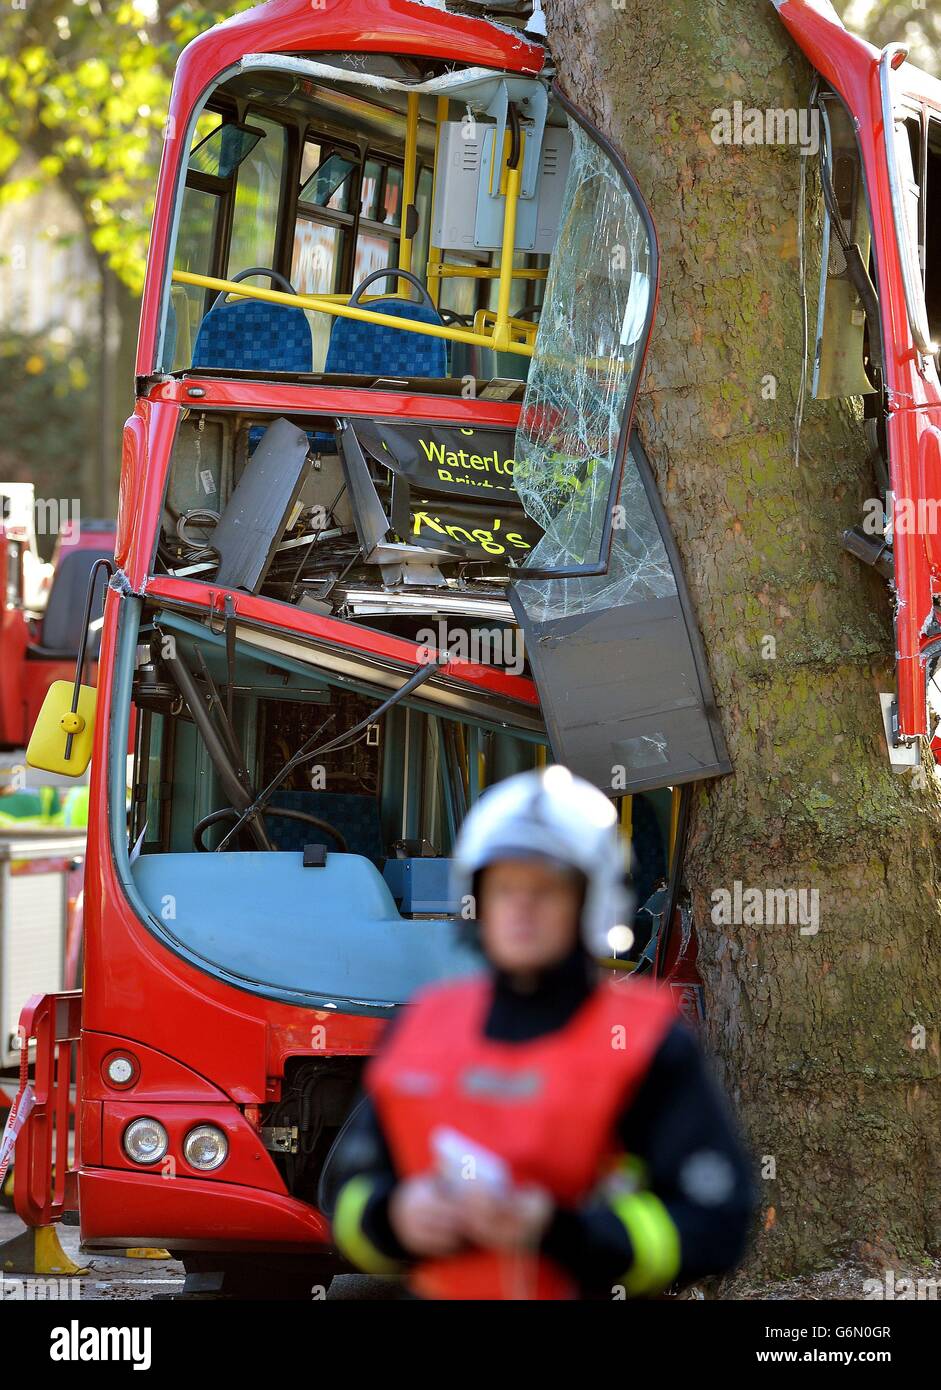 Polizia, ambulanza e vigili del fuoco sono sul luogo di un incidente di autobus a Kennington Road, a sud di Londra, in cui un certo numero di persone sono state ferite. Foto Stock